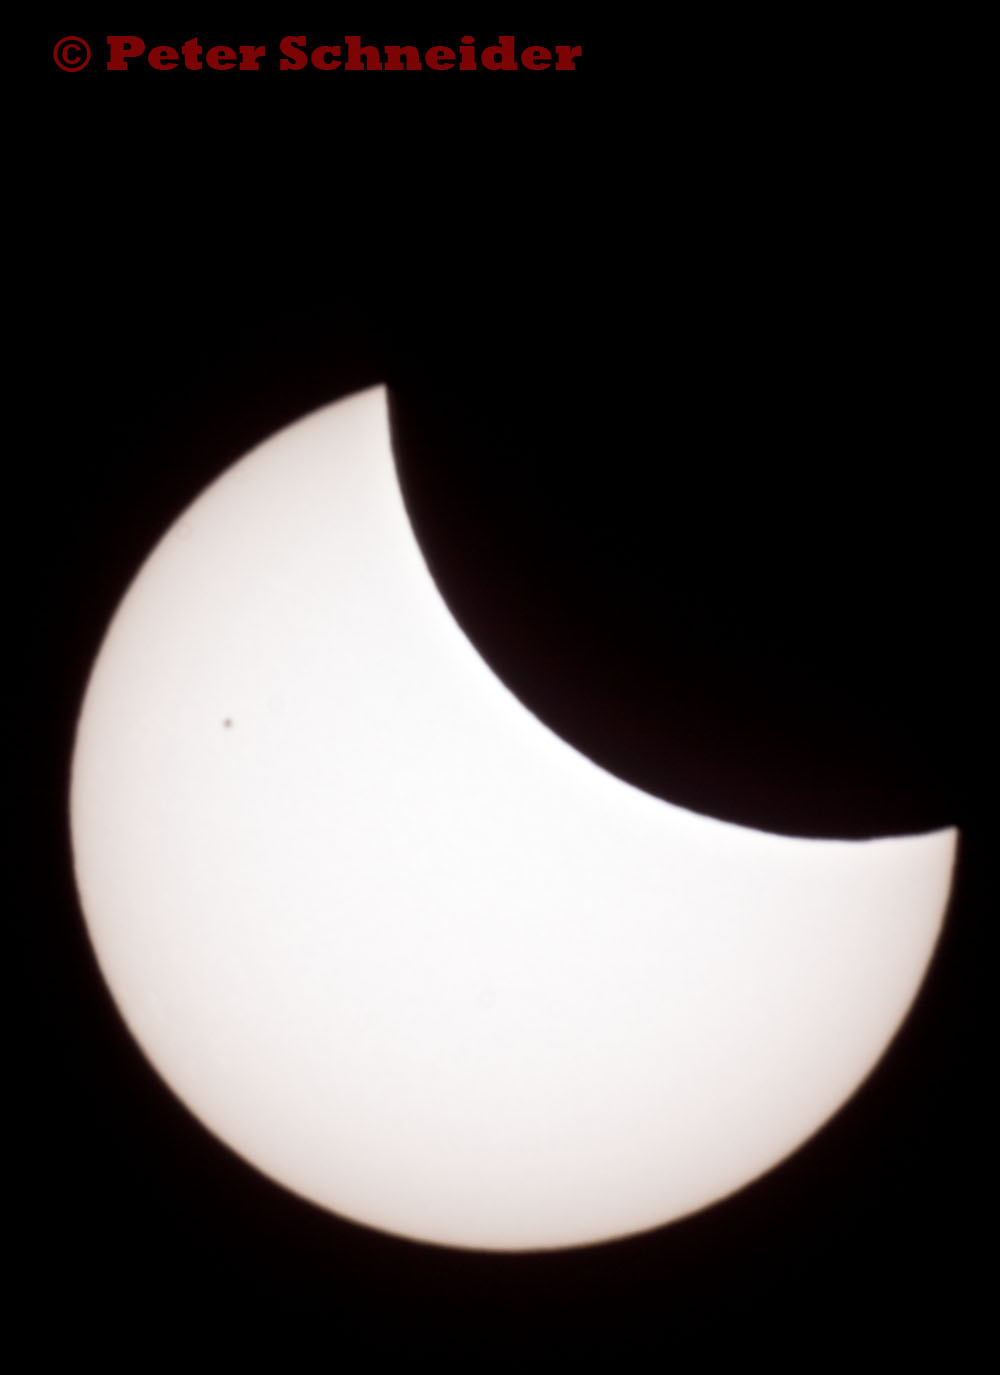 Sonnenfinsternis vom 20. Maerz 2015